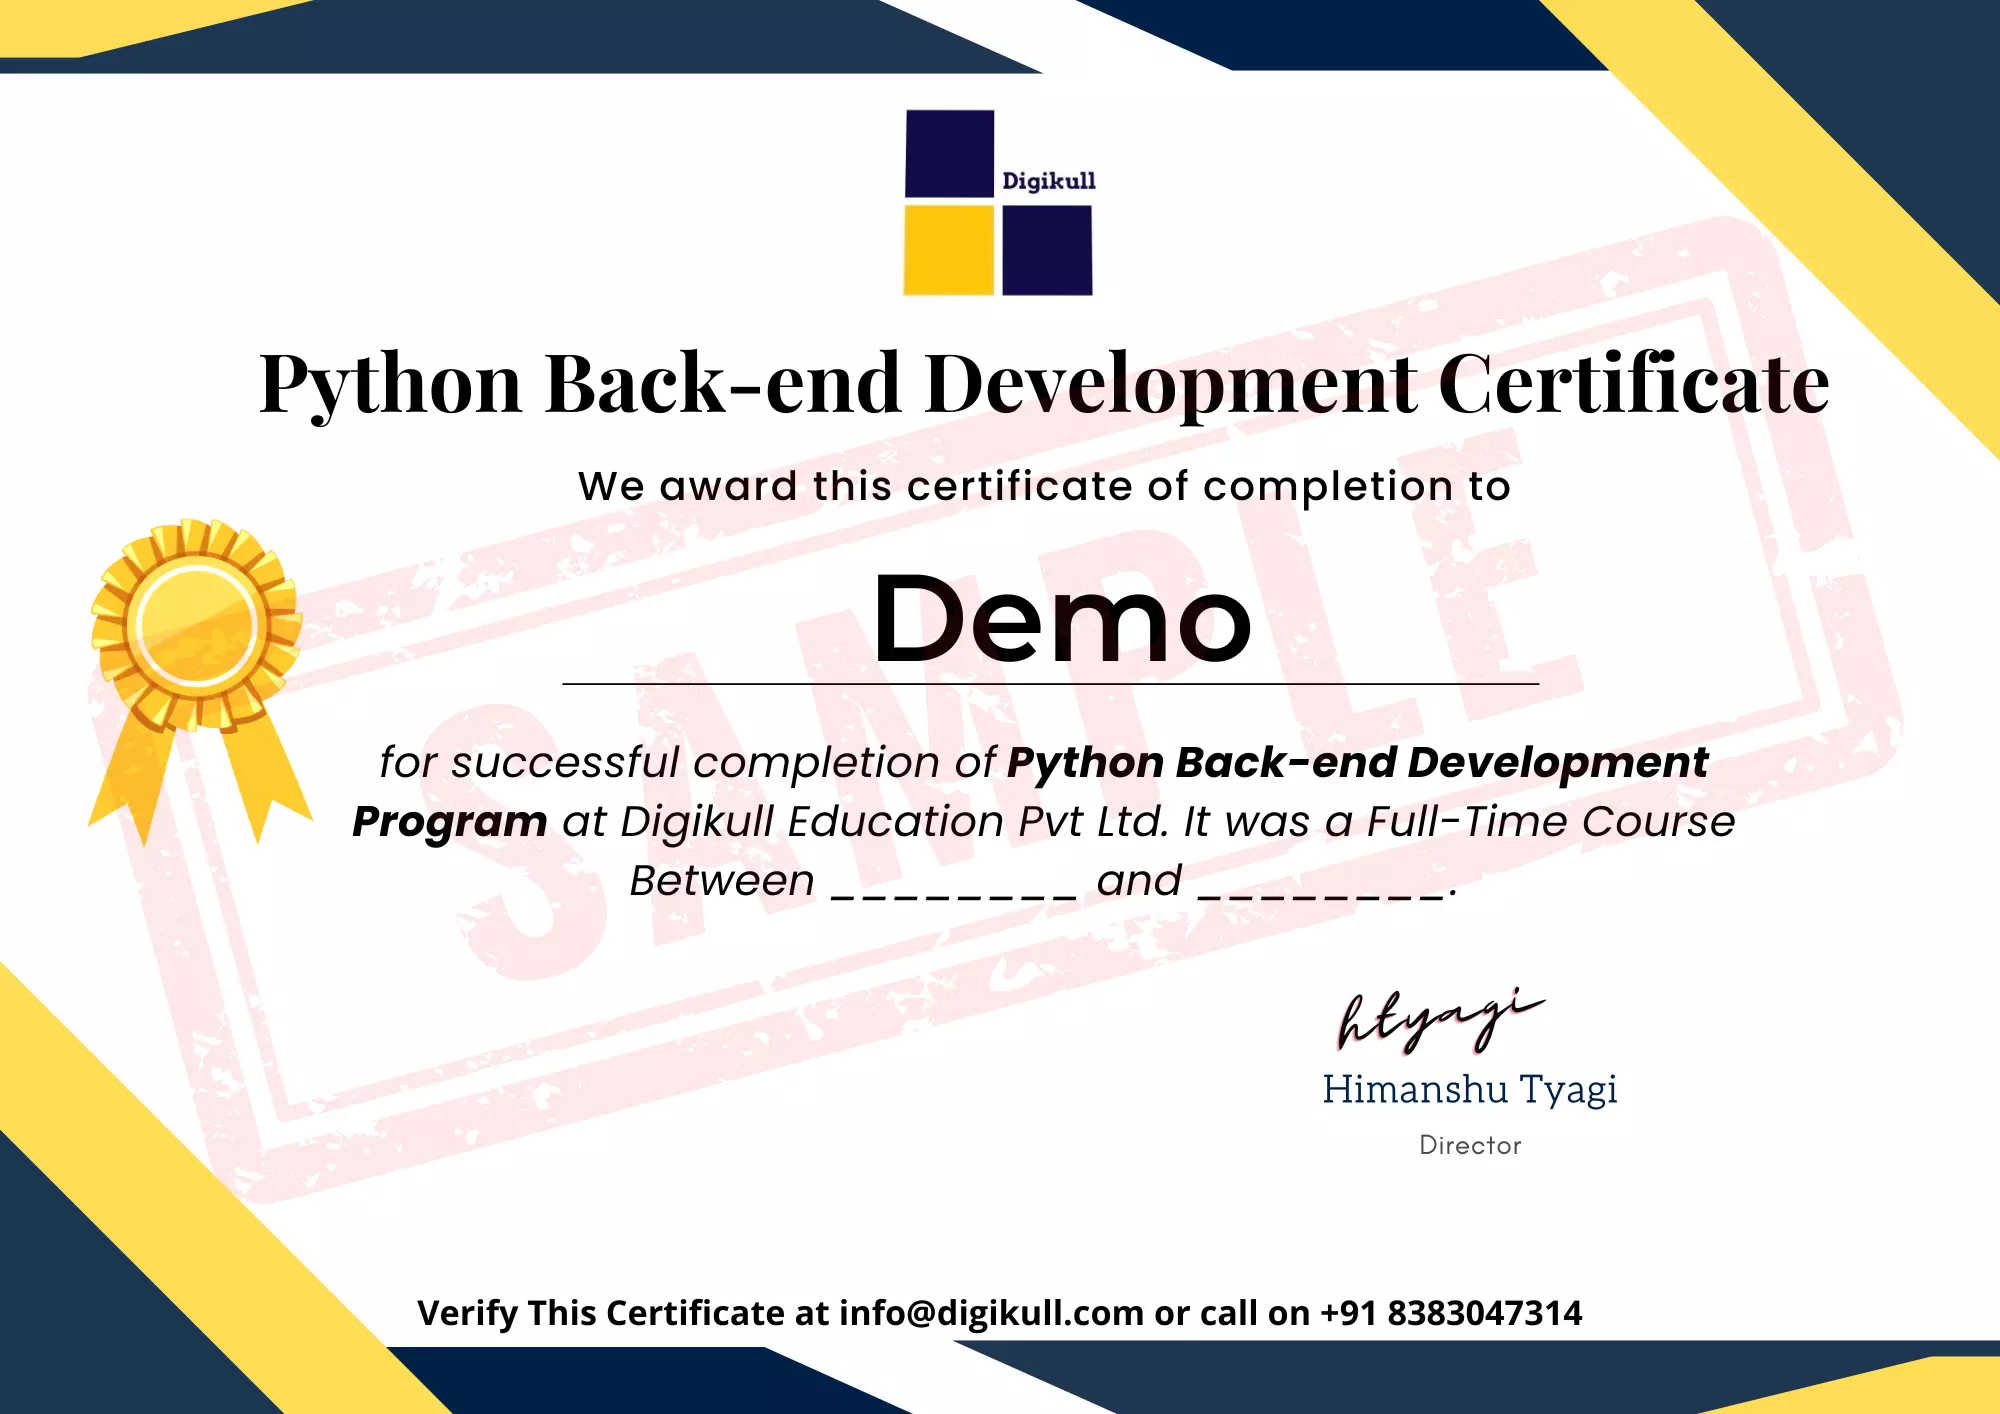 Digikull Certification